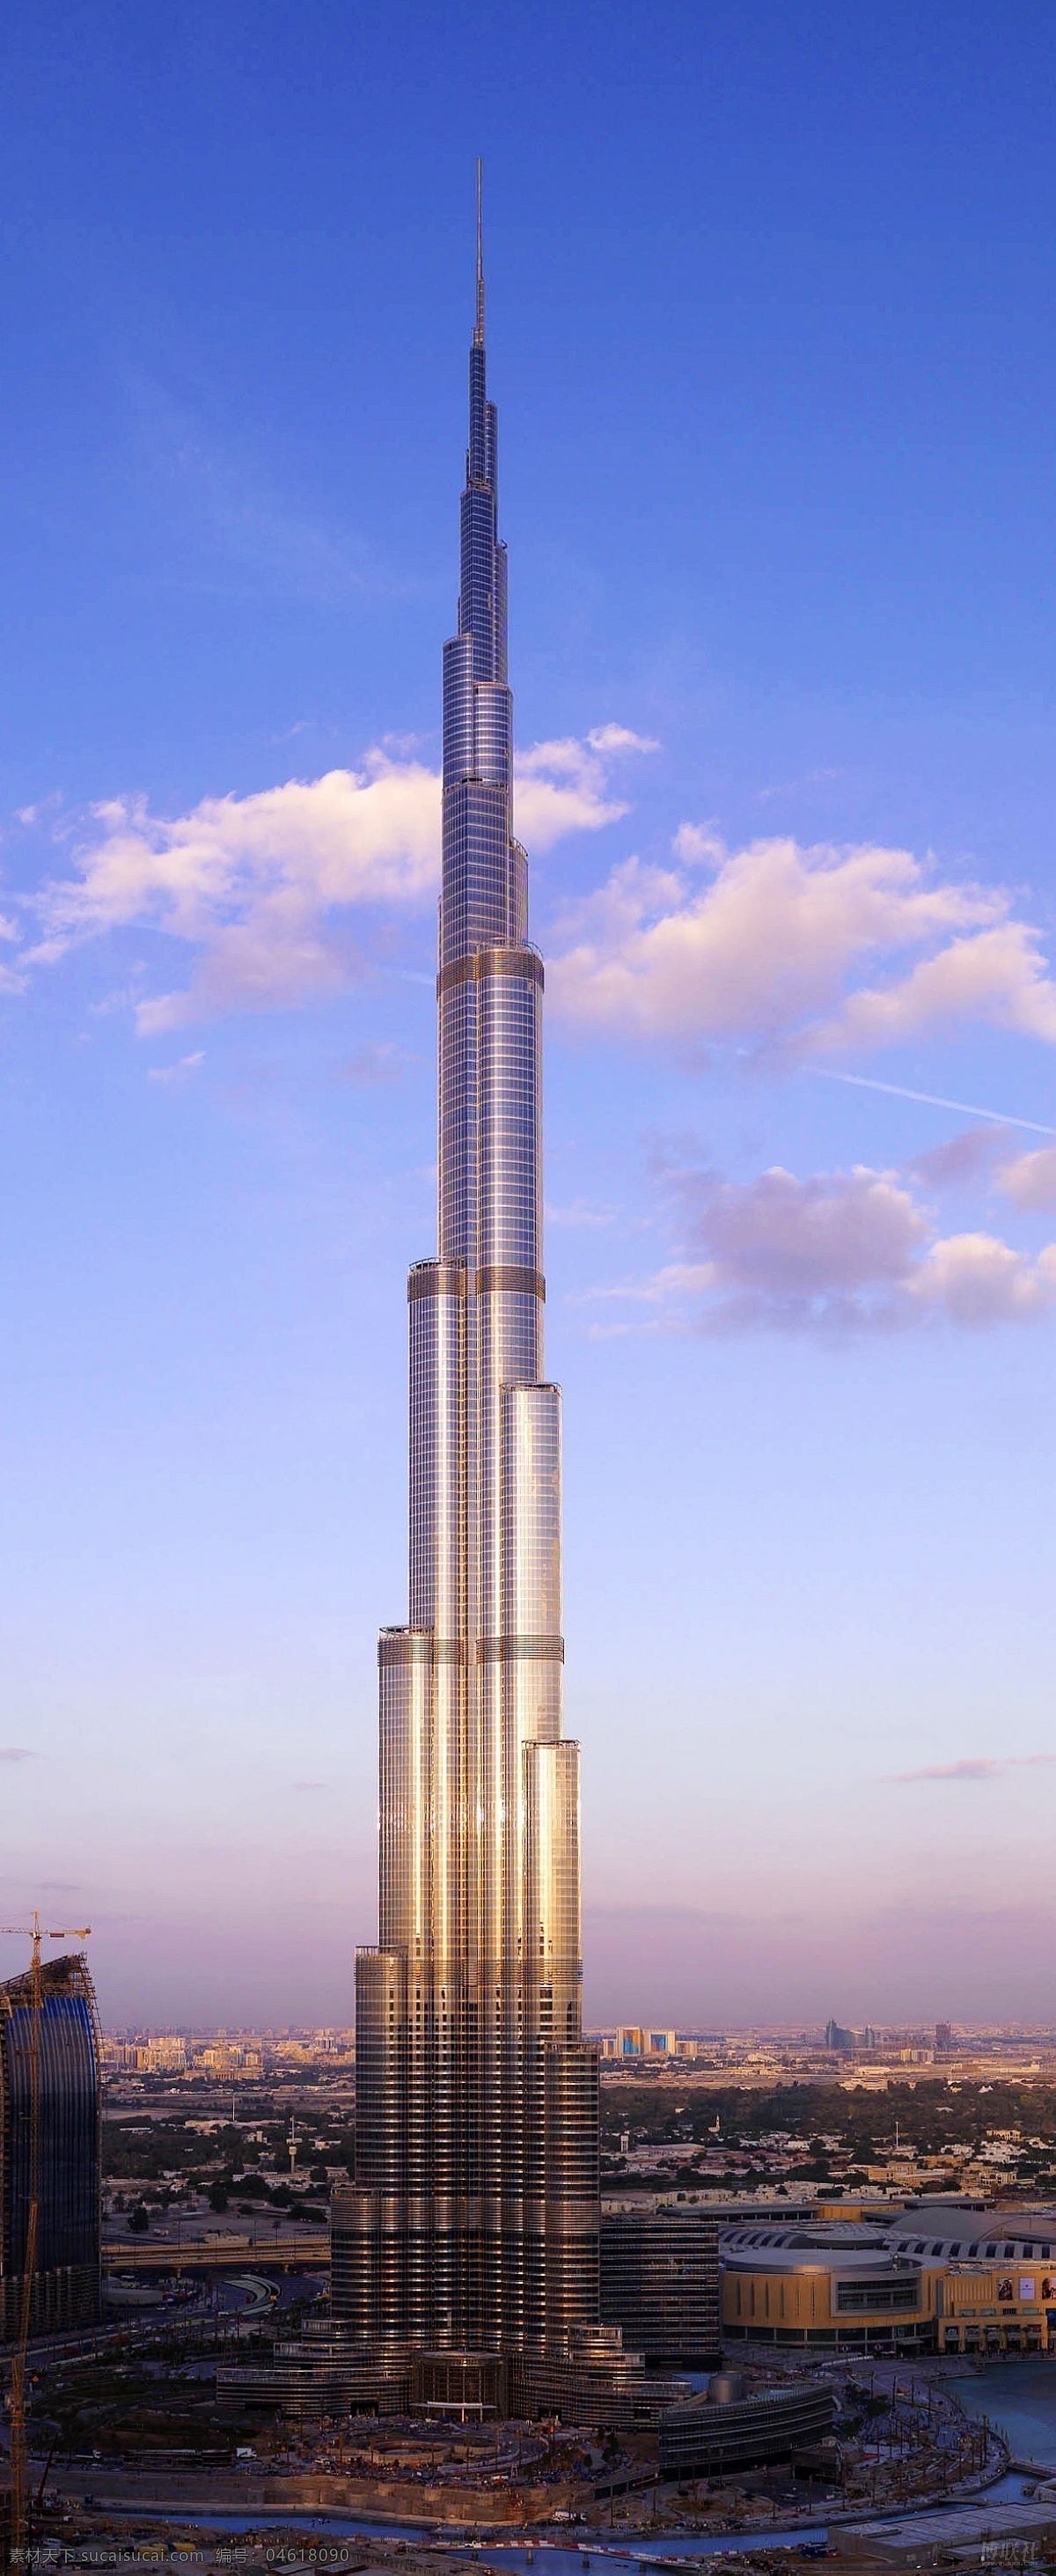 世界 上 最高 楼 迪拜 最高的楼 台湾高楼 迪拜塔 世界高楼 都市高楼 摩天大厦 摩天大楼 云宵 建筑景观 自然景观